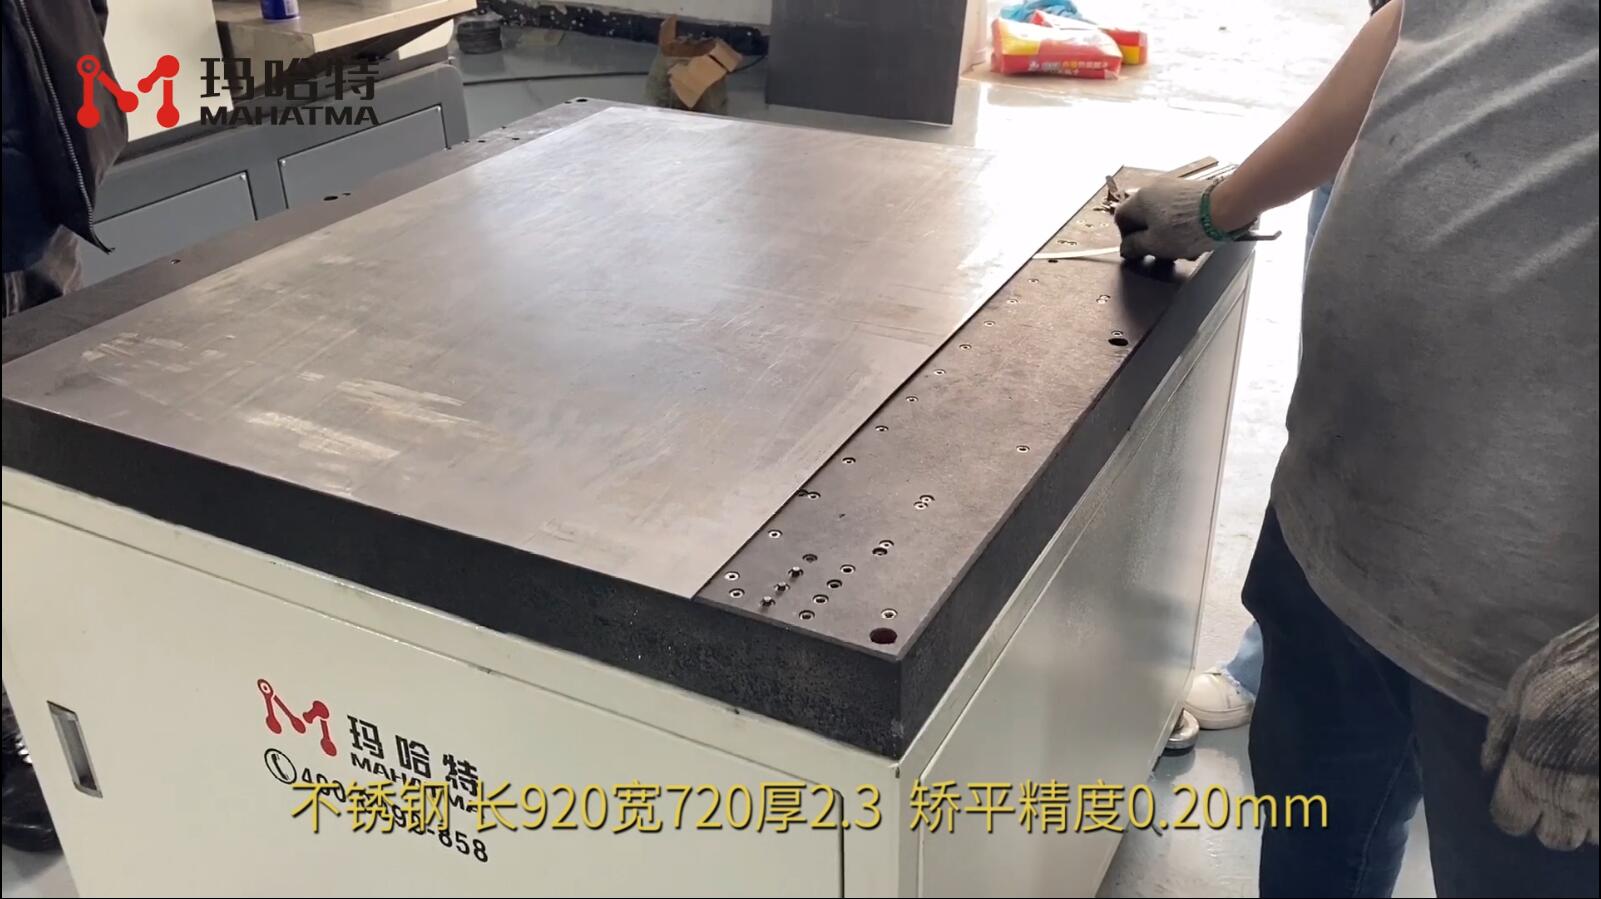 不锈钢 MHT120-1300 长方形 长920宽720厚2.3mm